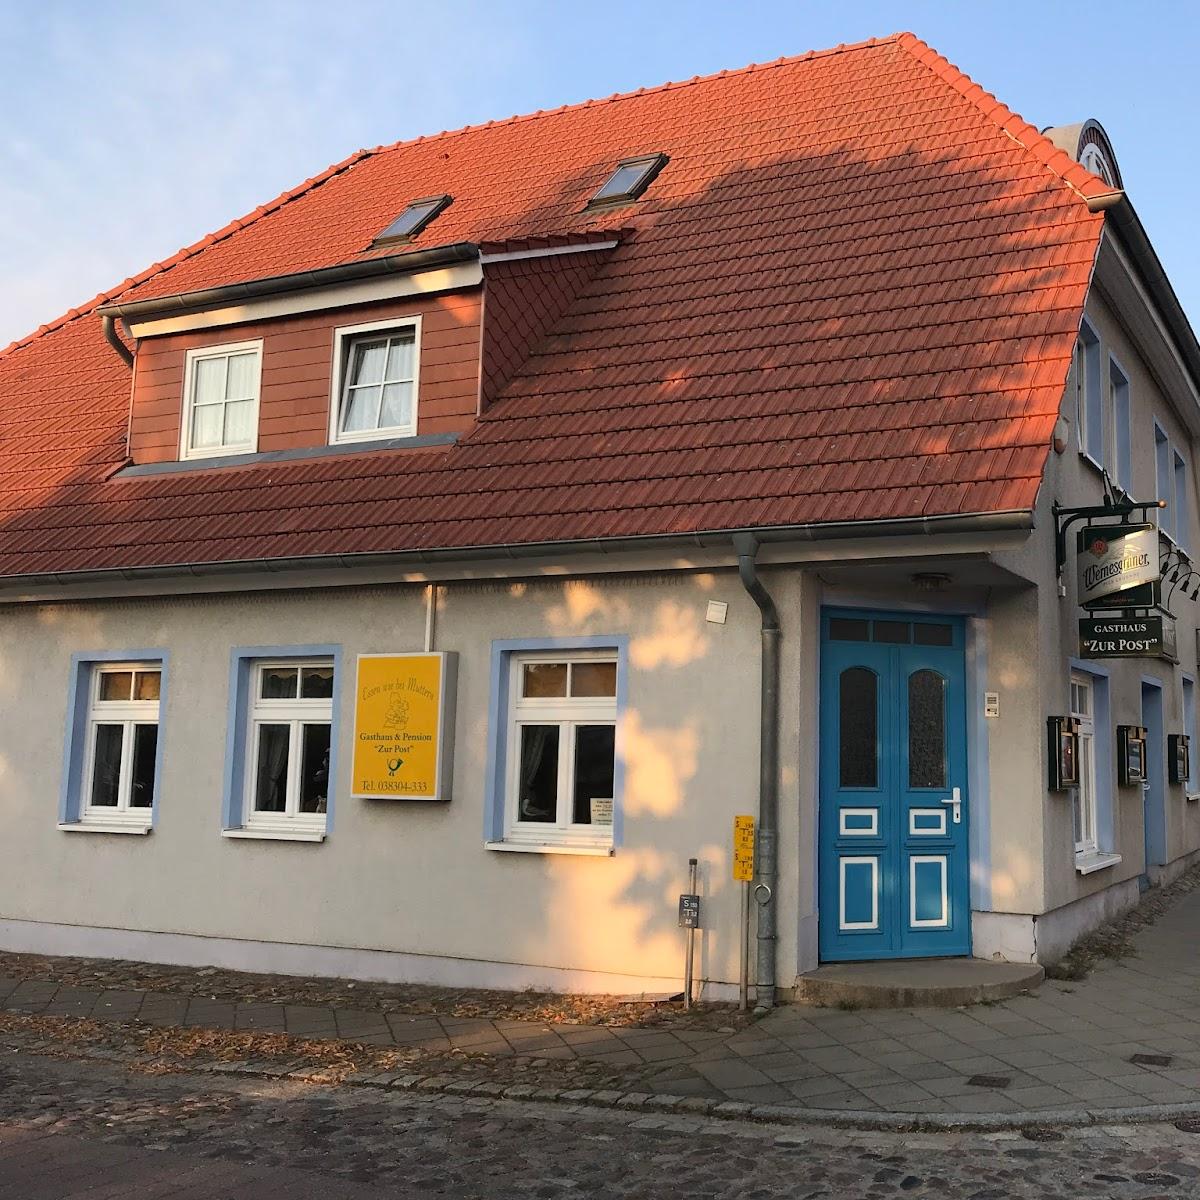 Restaurant "Gasthaus & Pension Zur Post" in Garz-Rügen